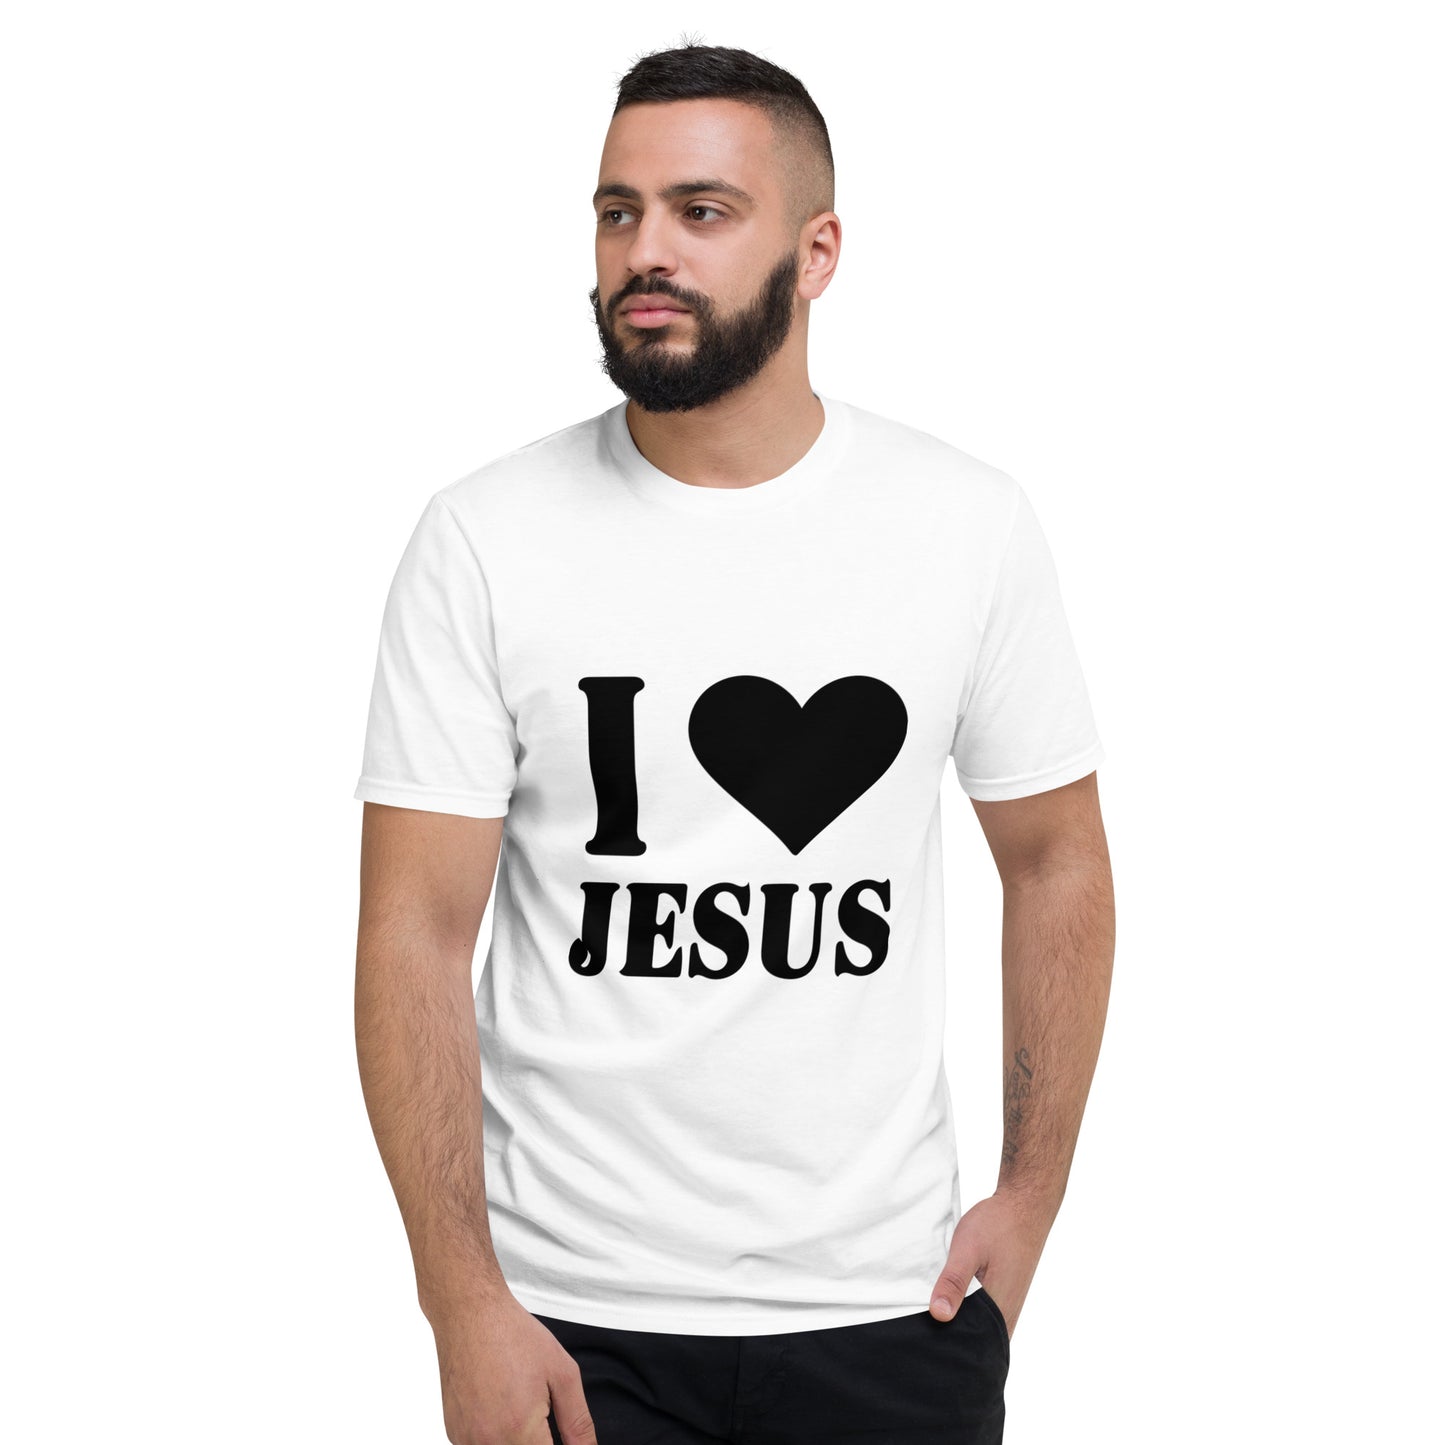 I Love Jesus Short-Sleeve T-Shirt